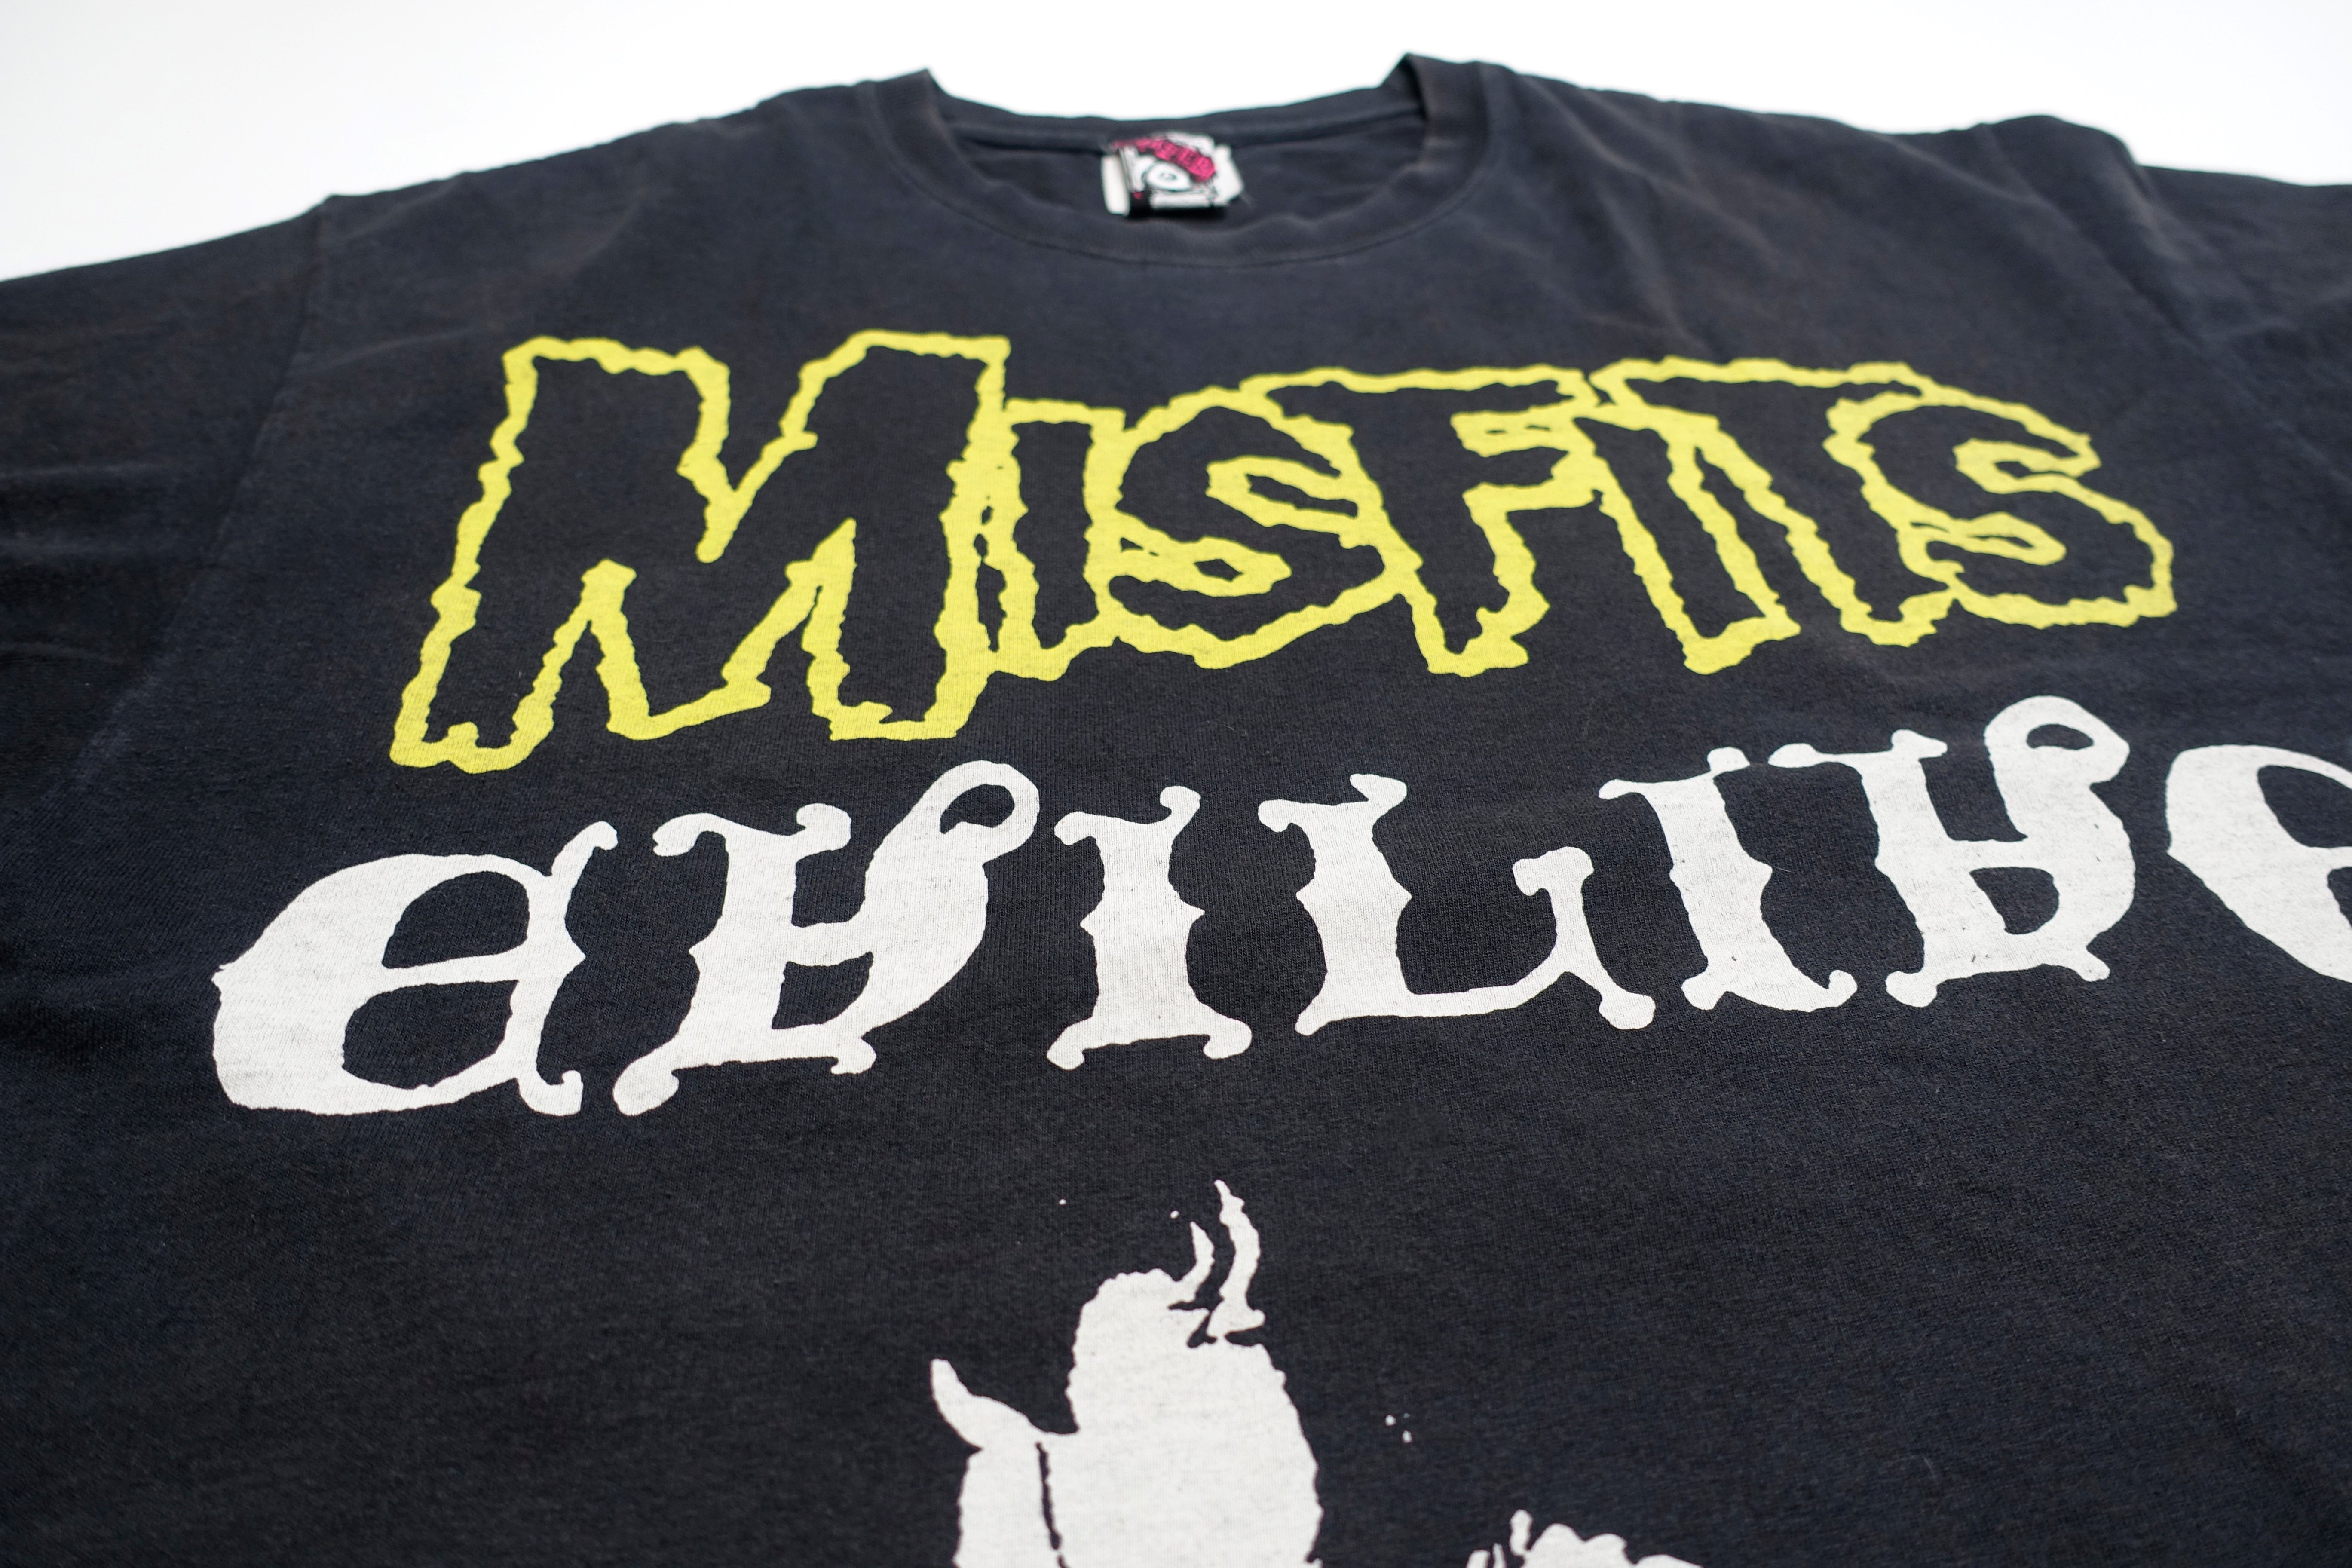 Misfits - Evilive 2005 Chaser Shirt Size Large